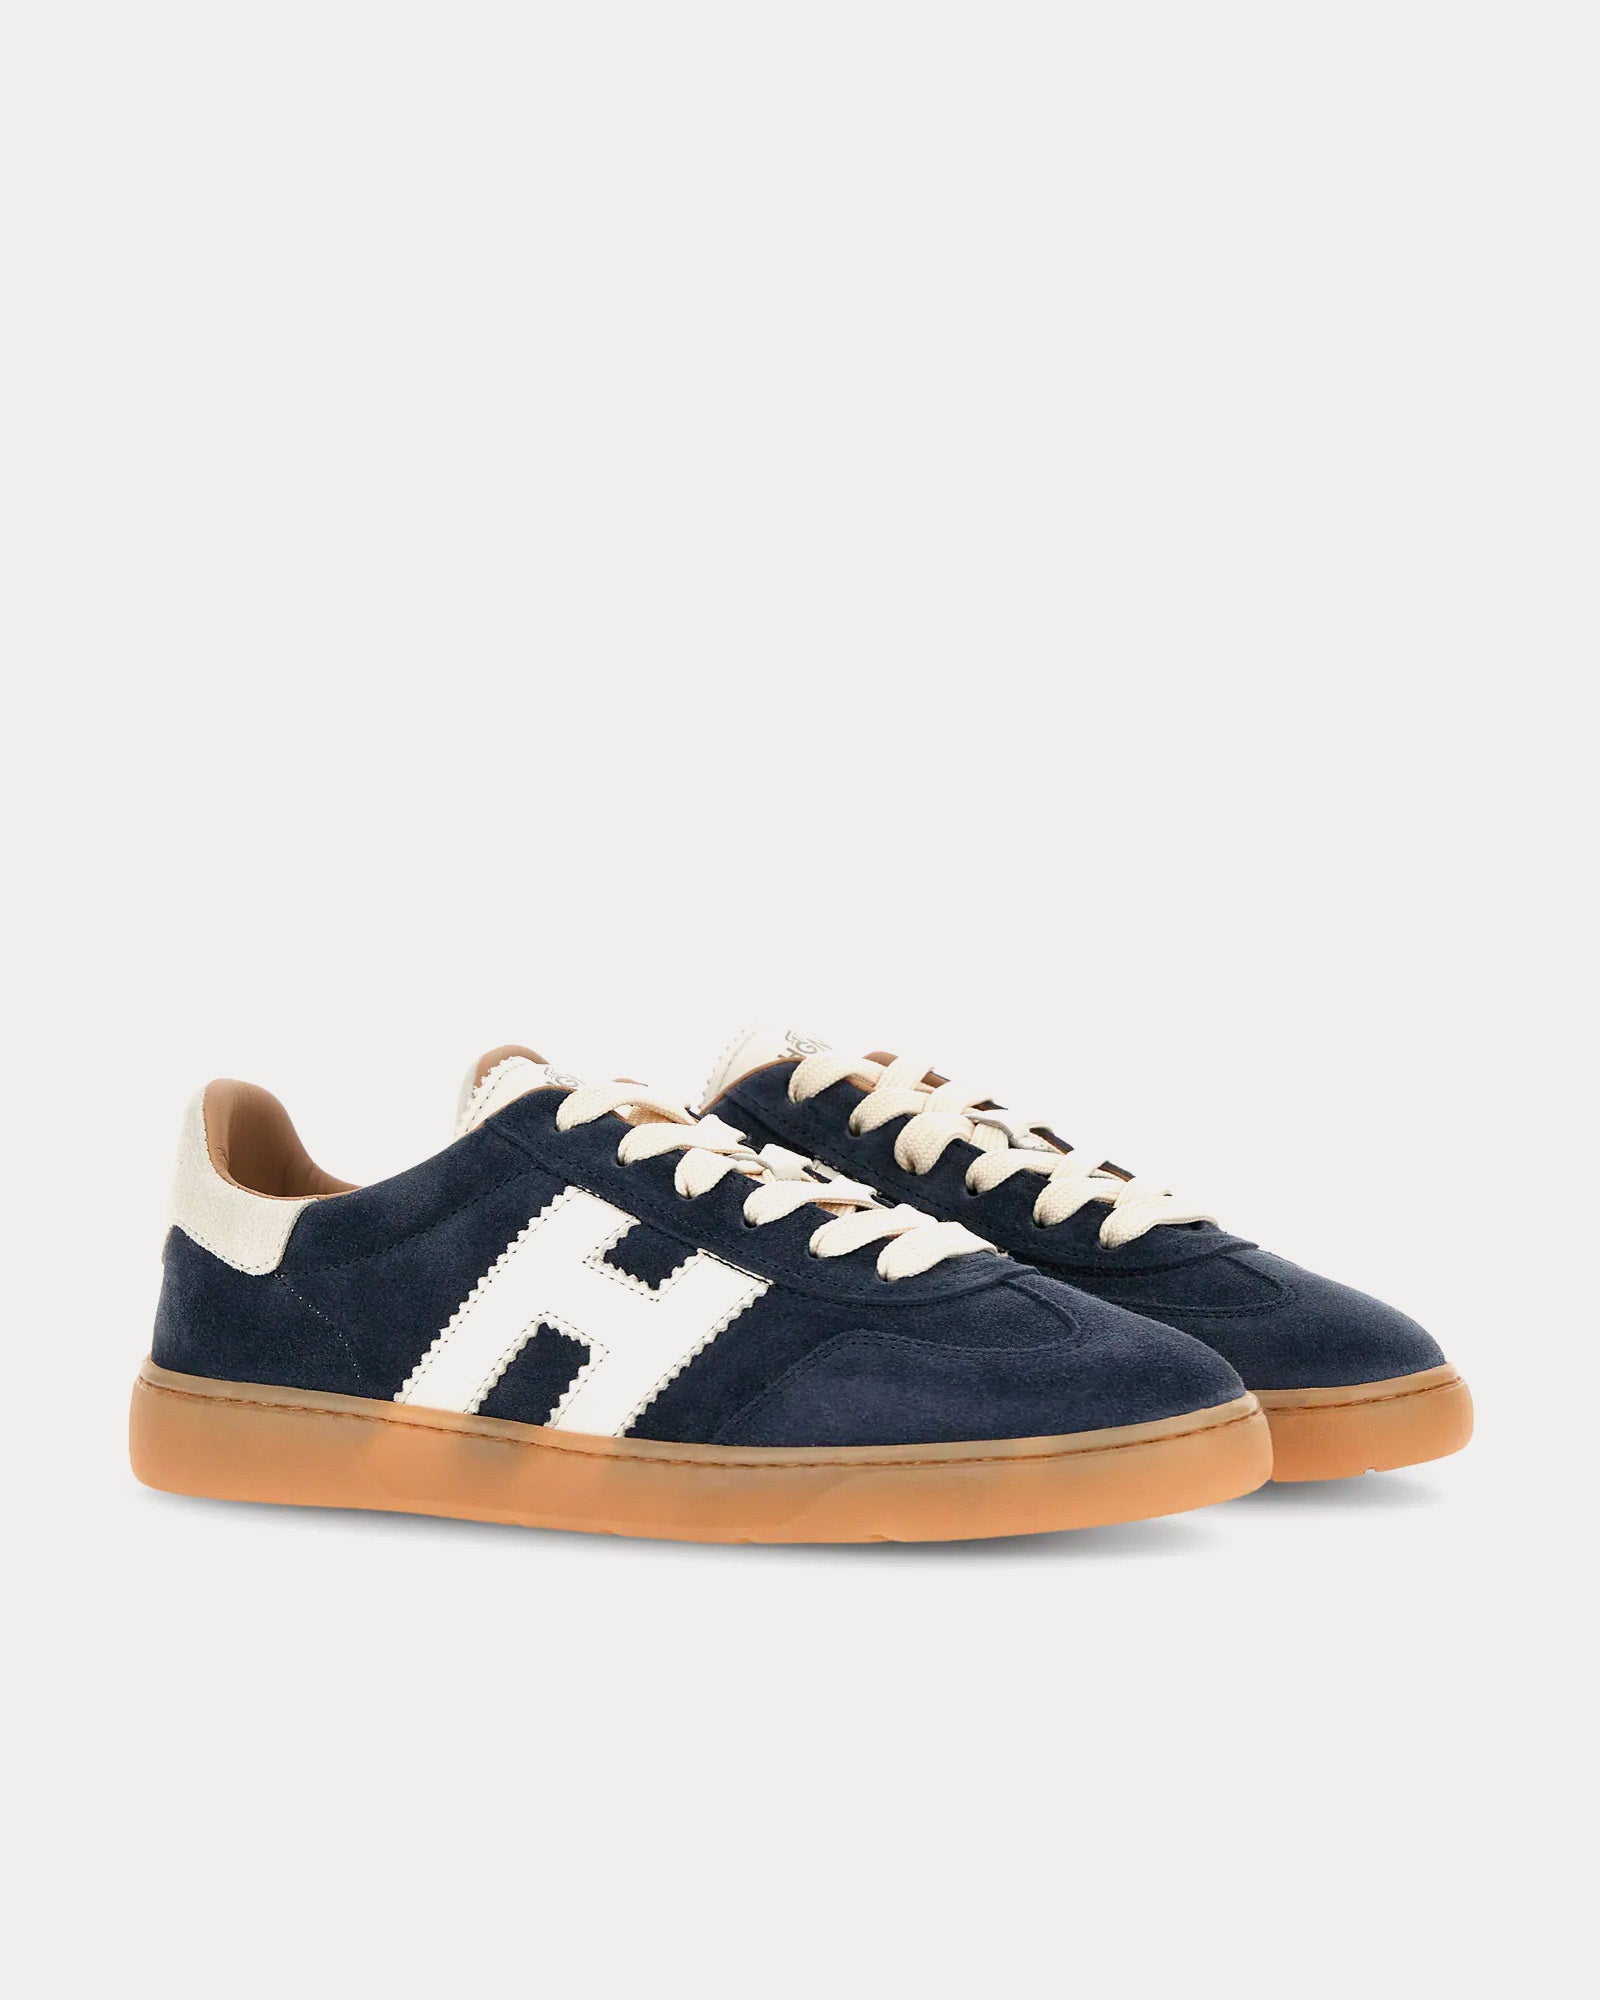 Hogan - Cool Suede Blue Low Top Sneakers